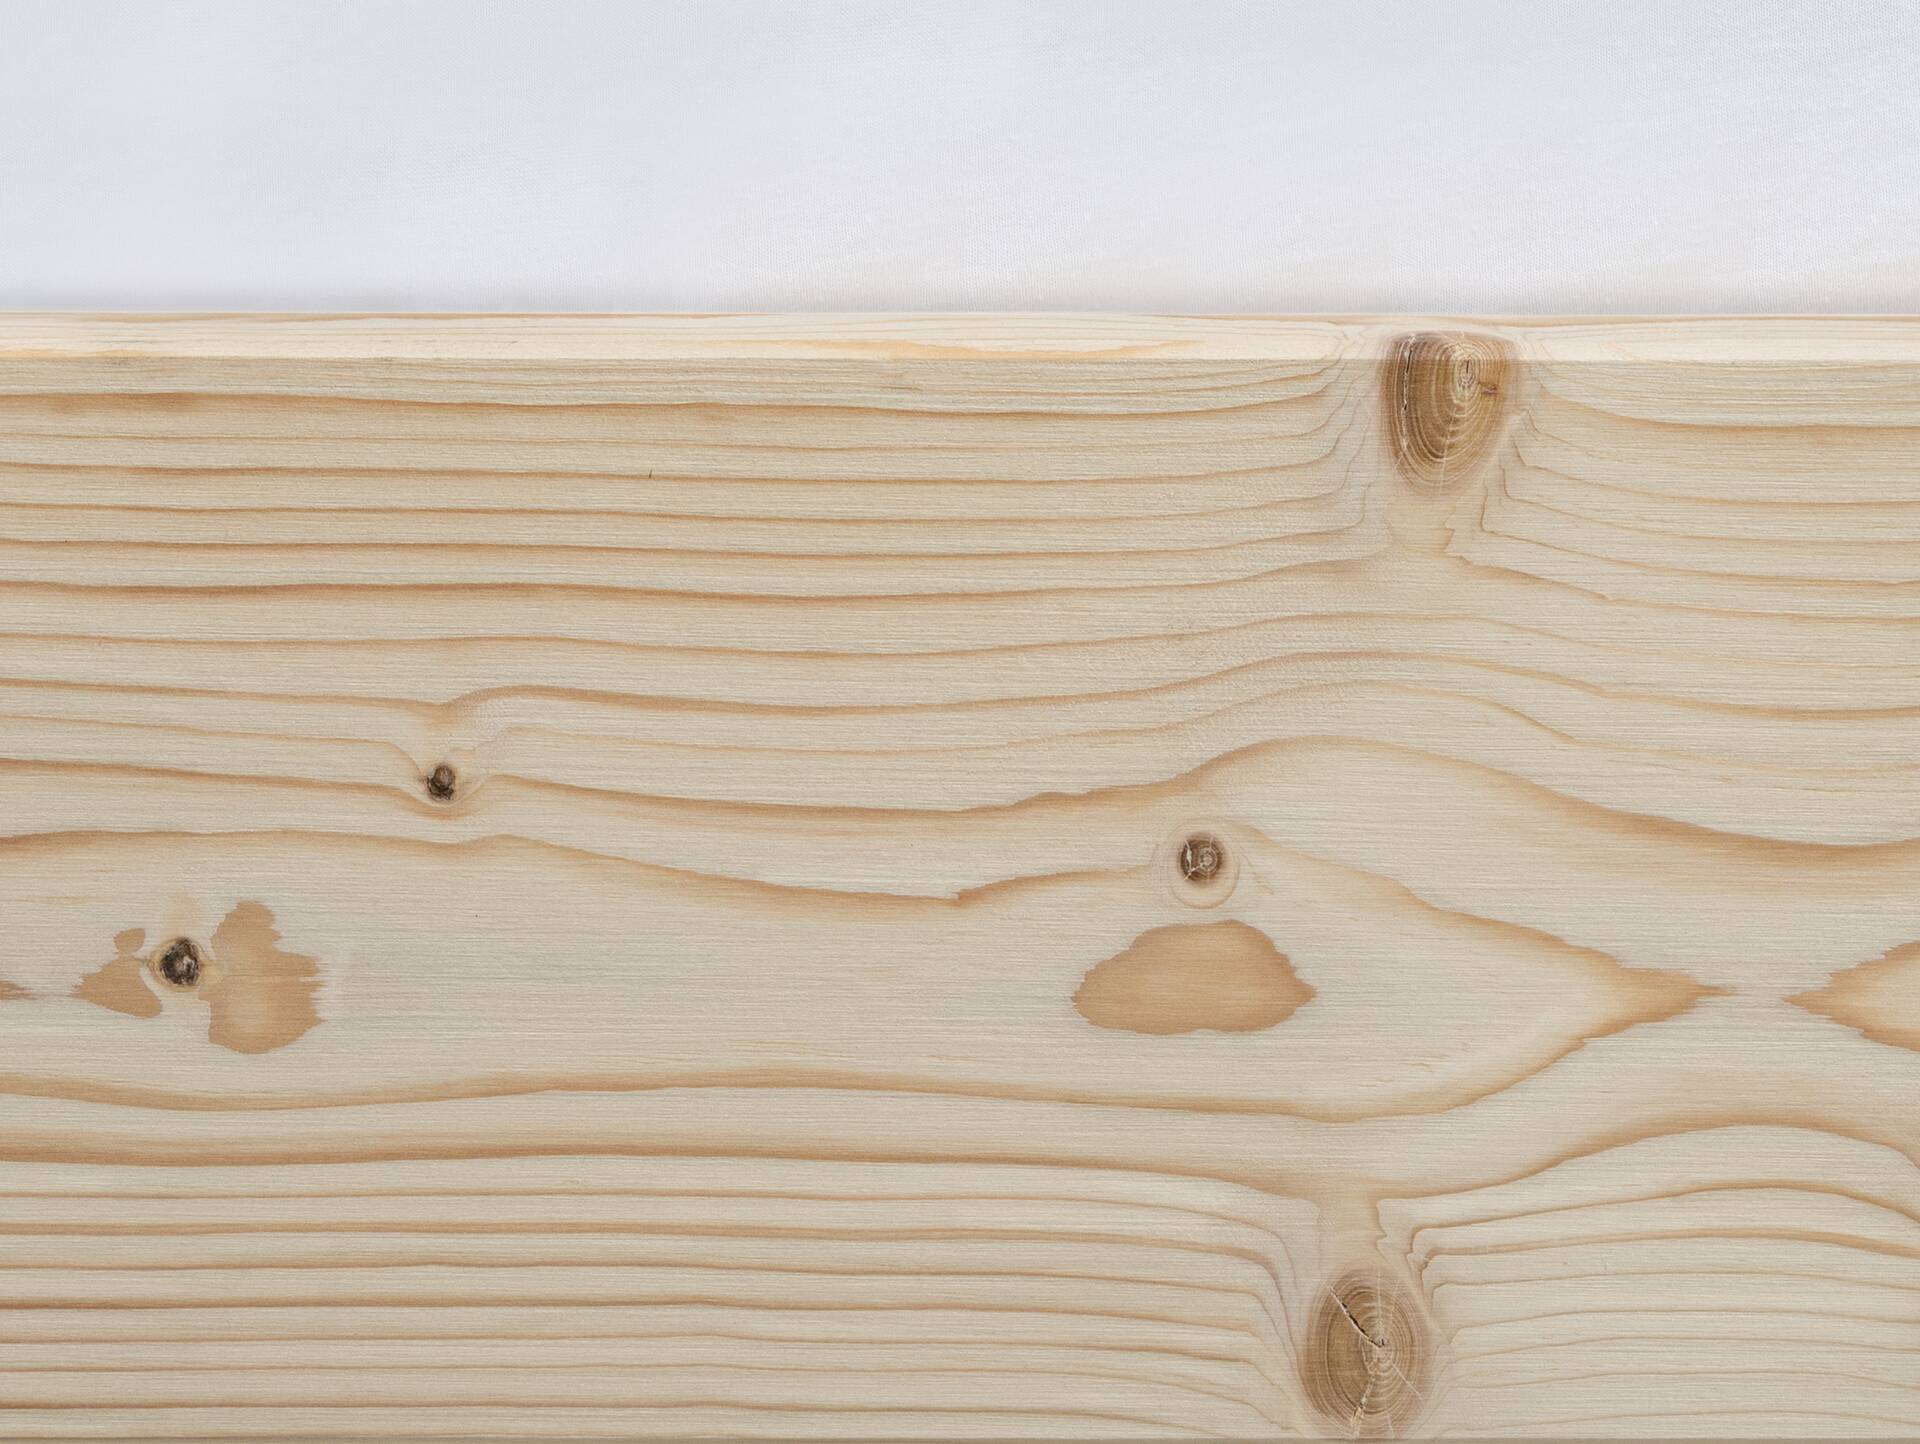 LUKY Kufenbett mit Kopfteil, Material Massivholz, Fichte massiv, Kufen schwarz 90 x 200 cm | natur